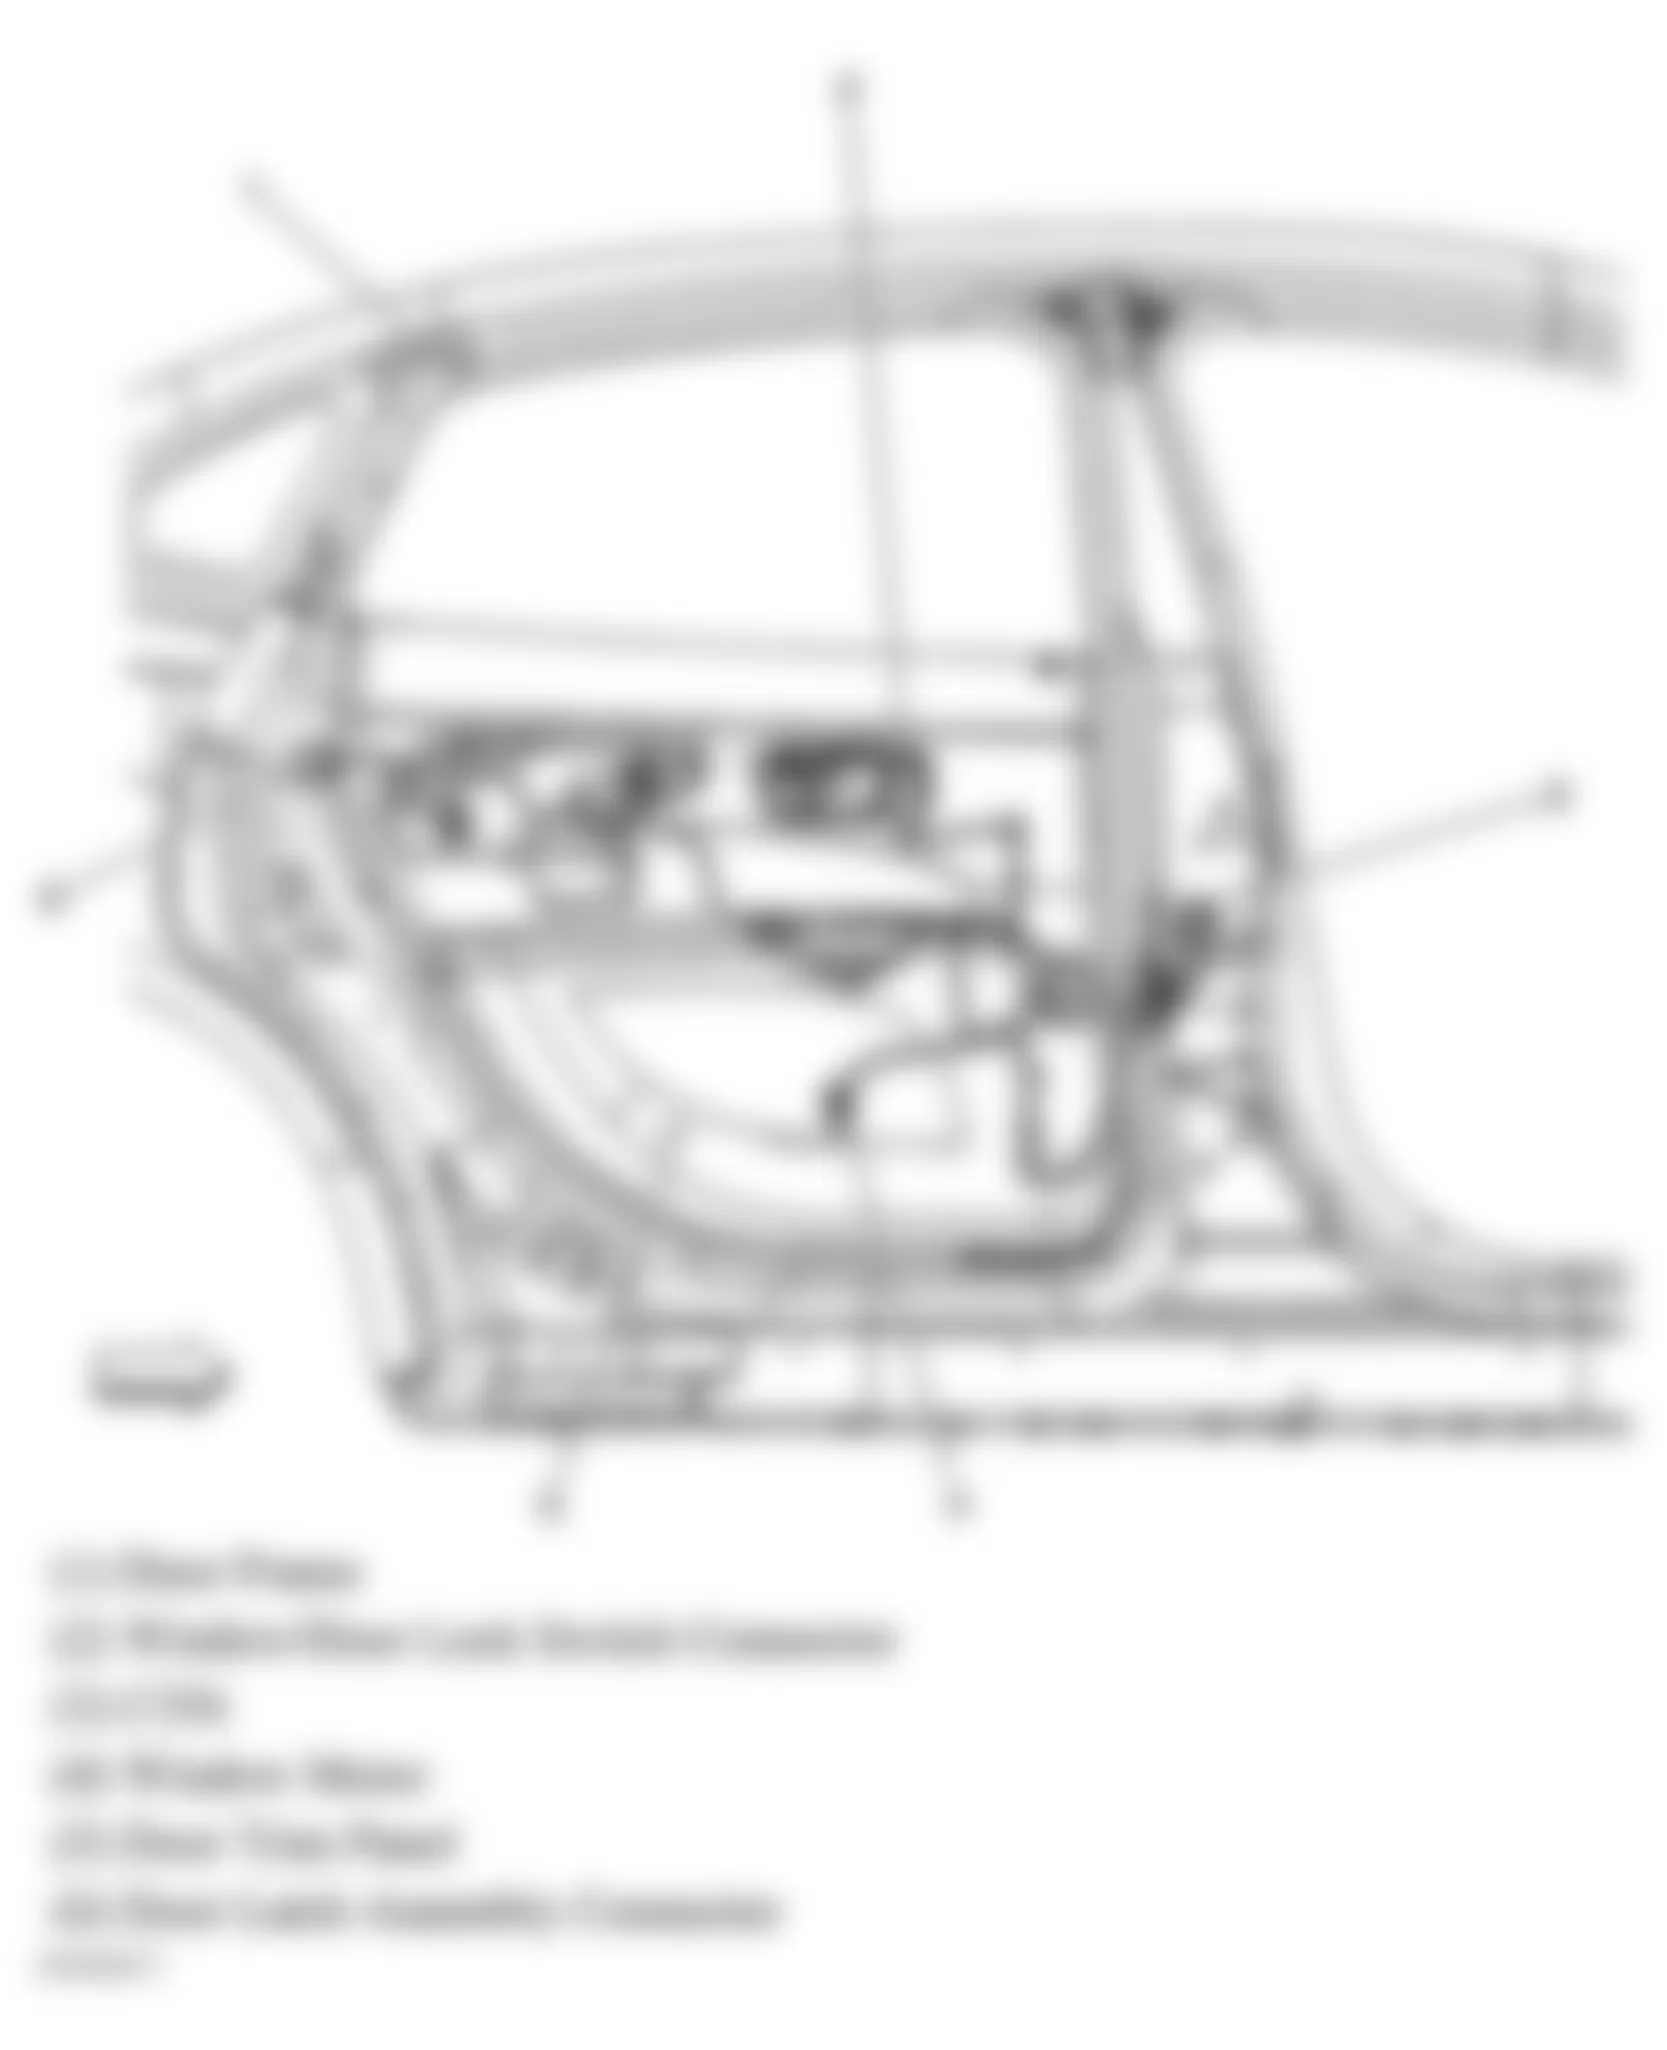 Buick Allure CXL 2006 - Component Locations -  Right Rear Door